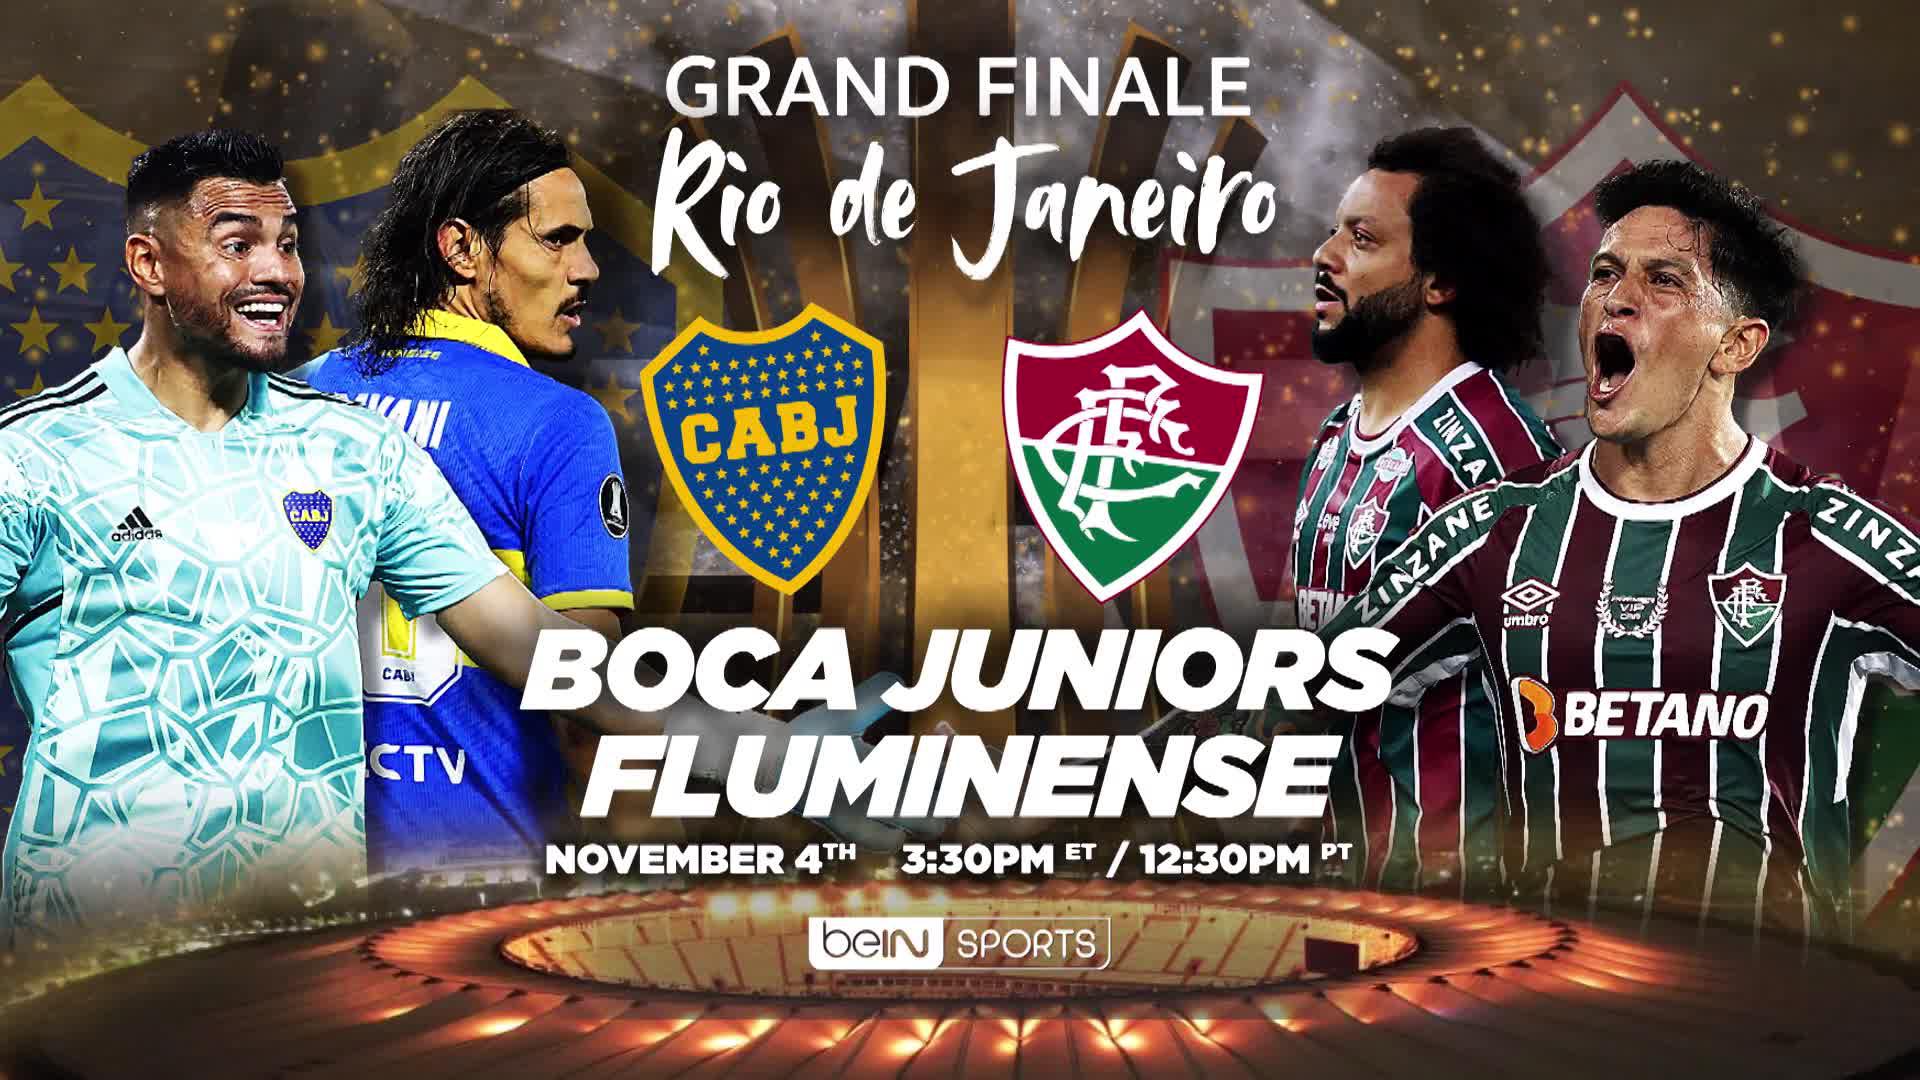 Copa Libertadores Final: Boca Juniors vs. Fluminense